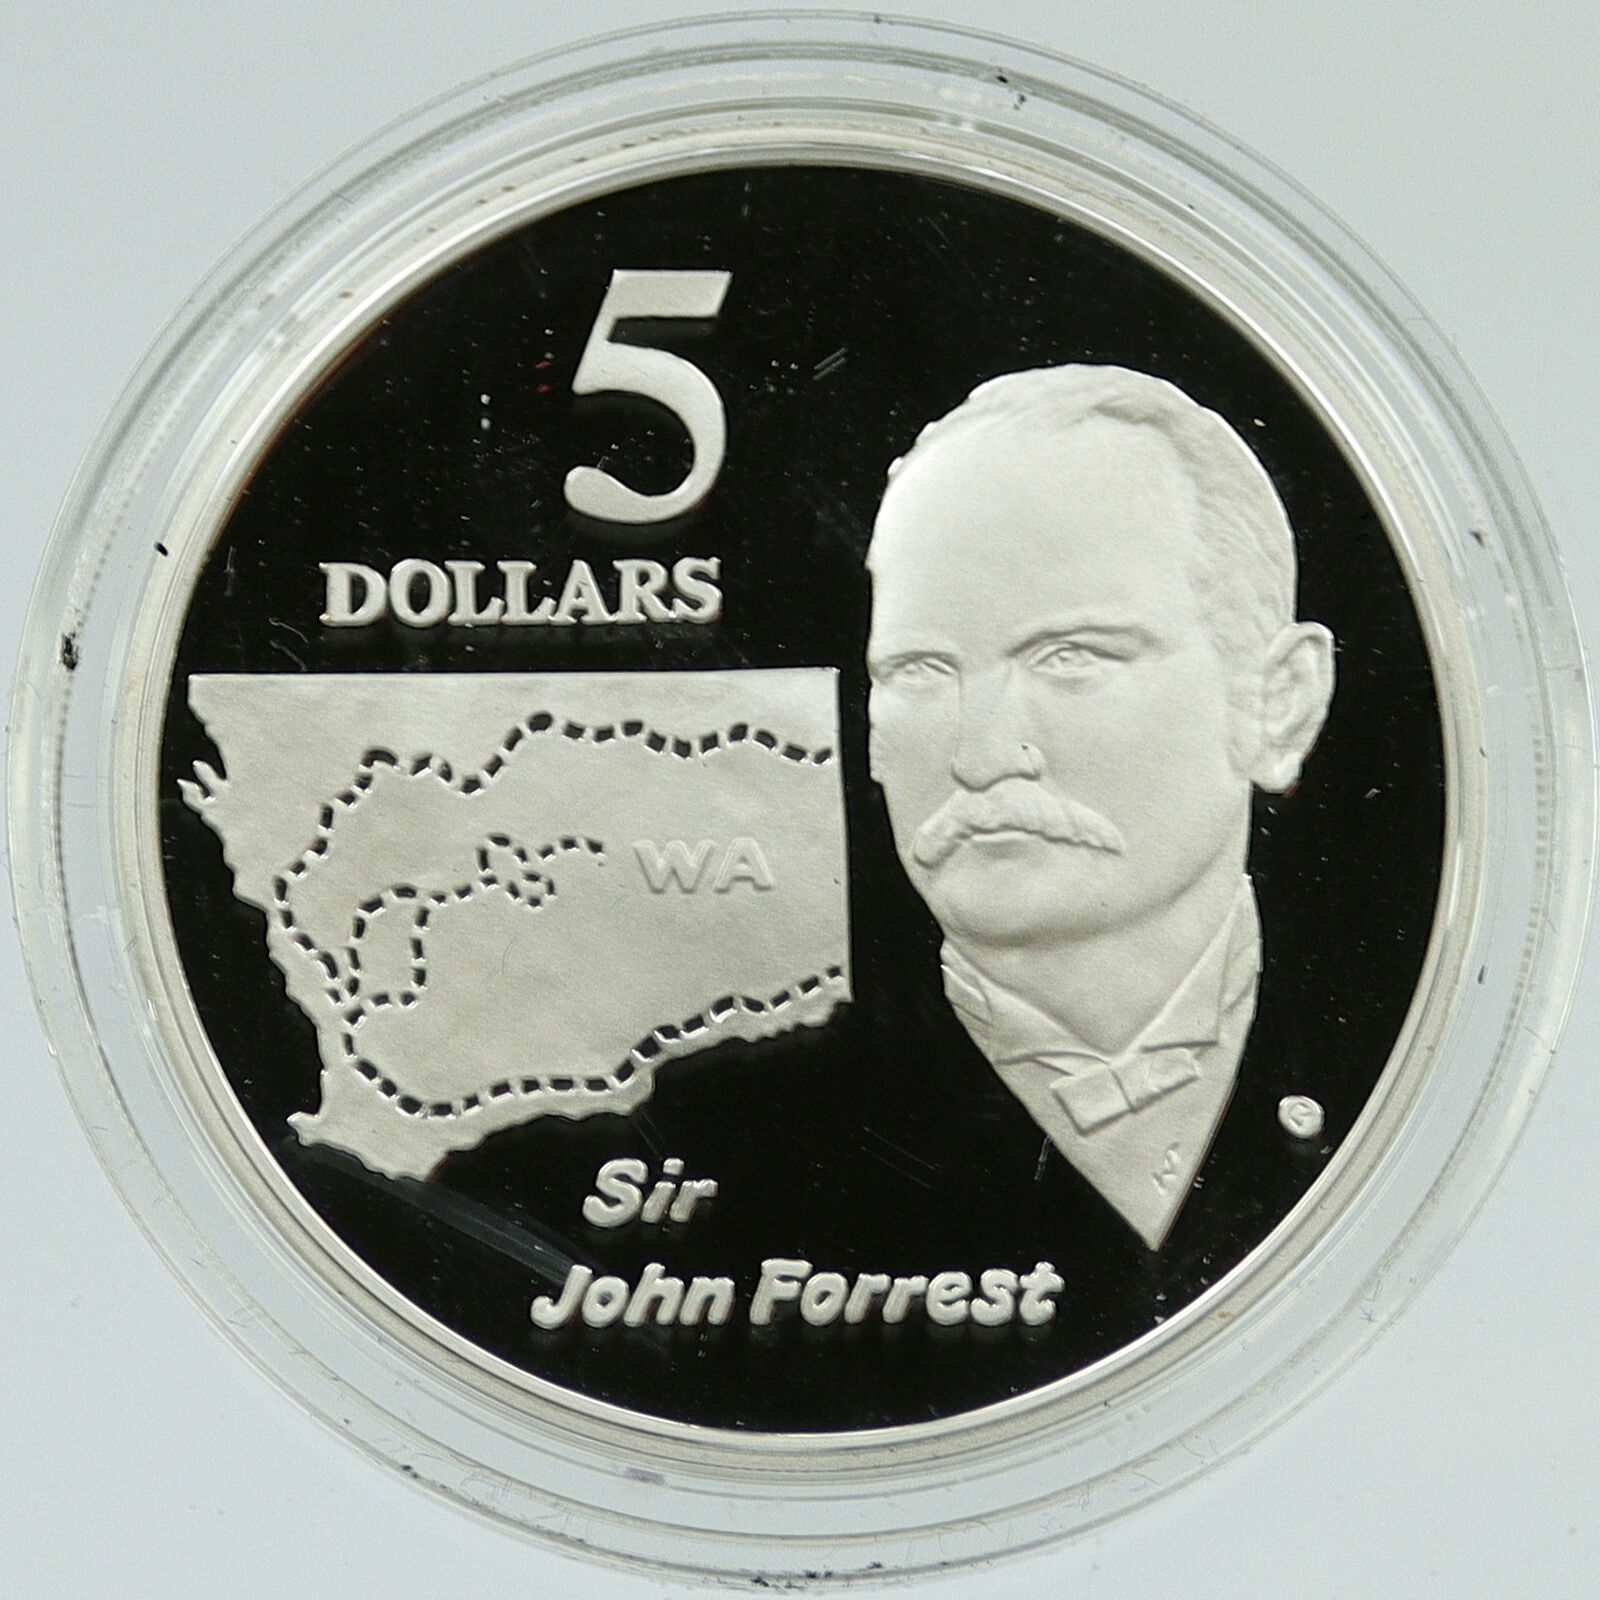 1994 AUSTRALIA UK Elizabeth II Sir John Forrest OLD Proof Silver $5 Coin i116588